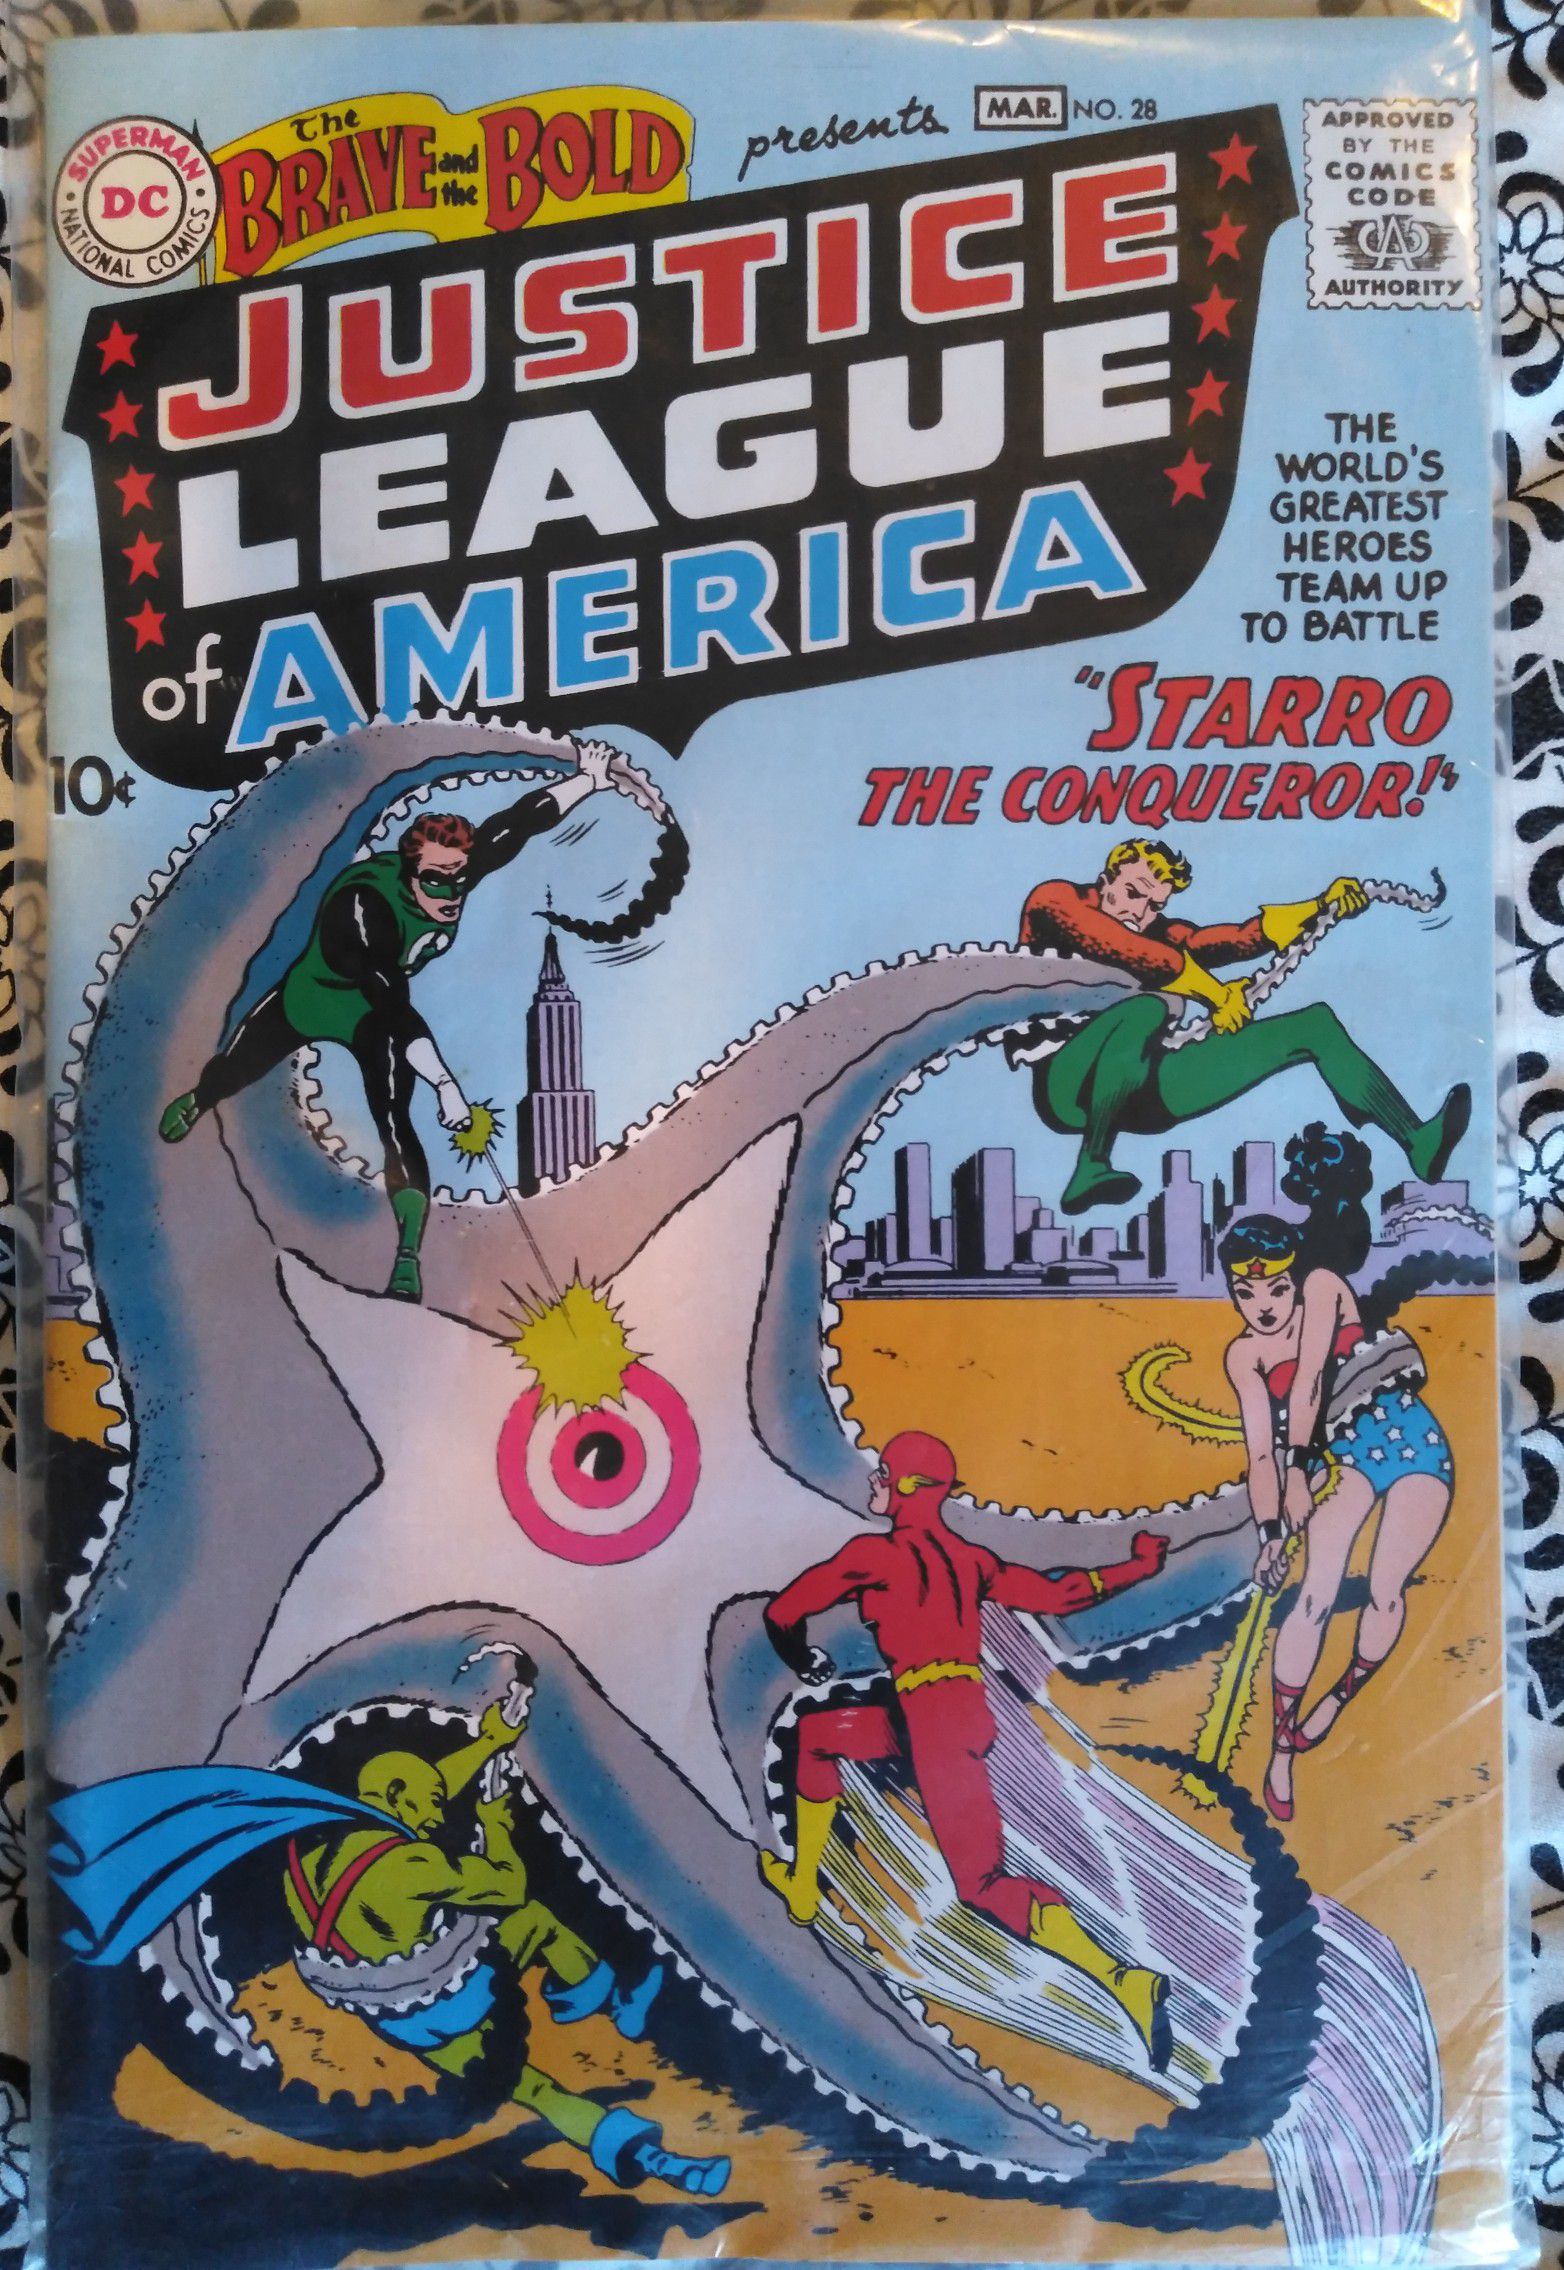 Justice league comic